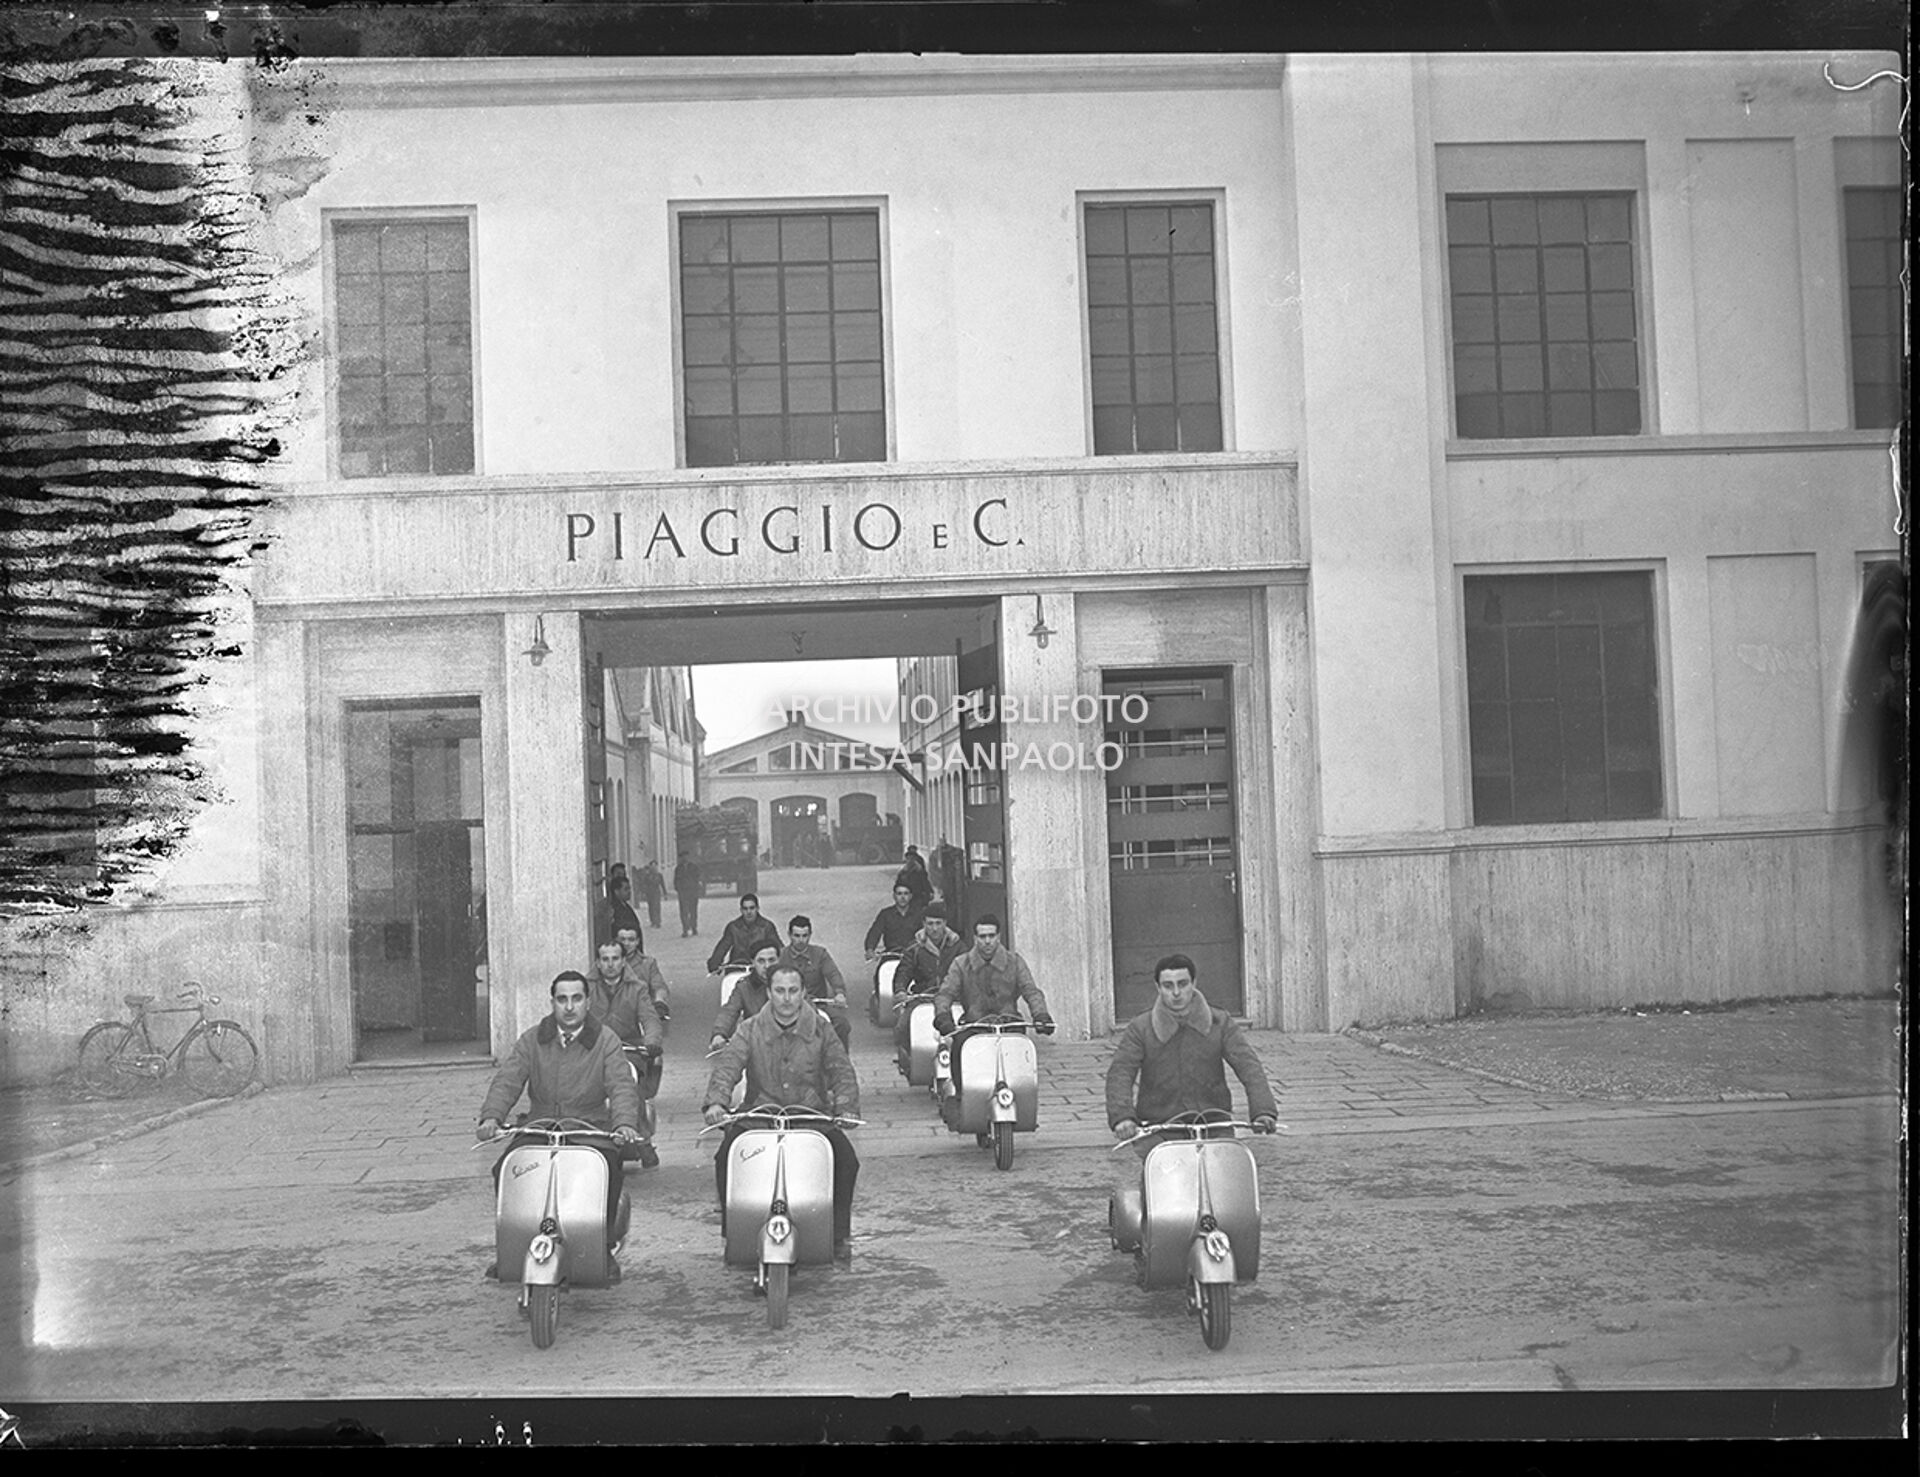 Operai della Piaggio & C. in sella alla Vespa davanti all'ingresso dello stabilimento a Pontedera